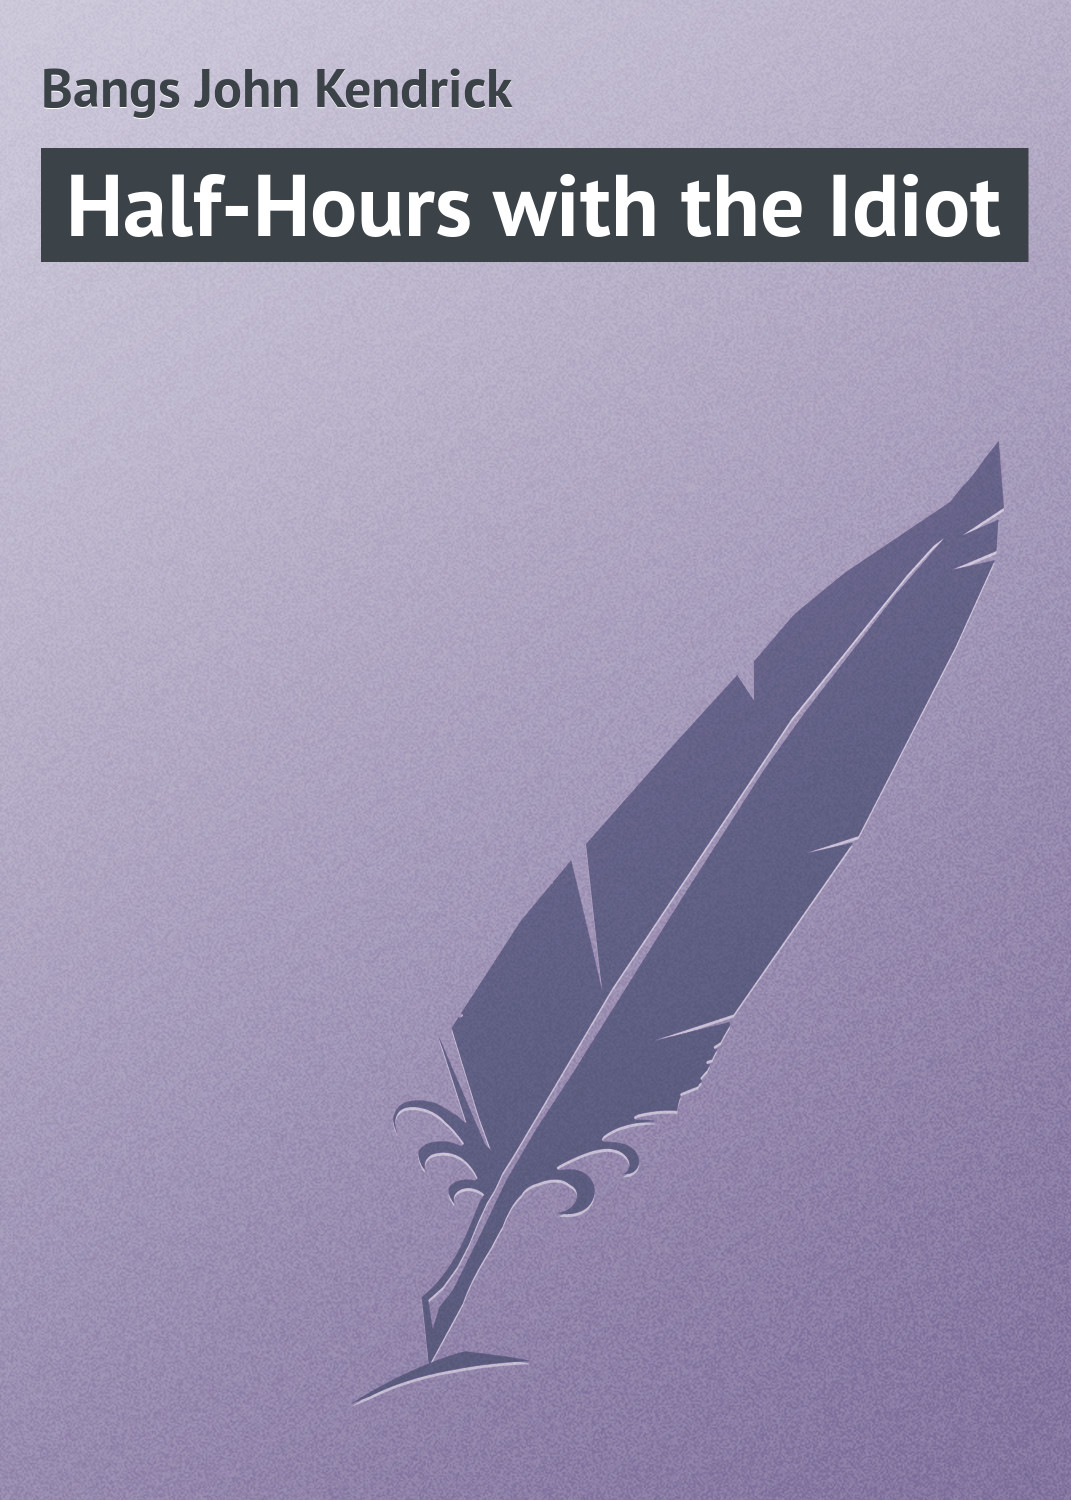 Книга Half-Hours with the Idiot из серии , созданная John Bangs, может относится к жанру Зарубежная классика, Зарубежный юмор. Стоимость электронной книги Half-Hours with the Idiot с идентификатором 23149059 составляет 5.99 руб.